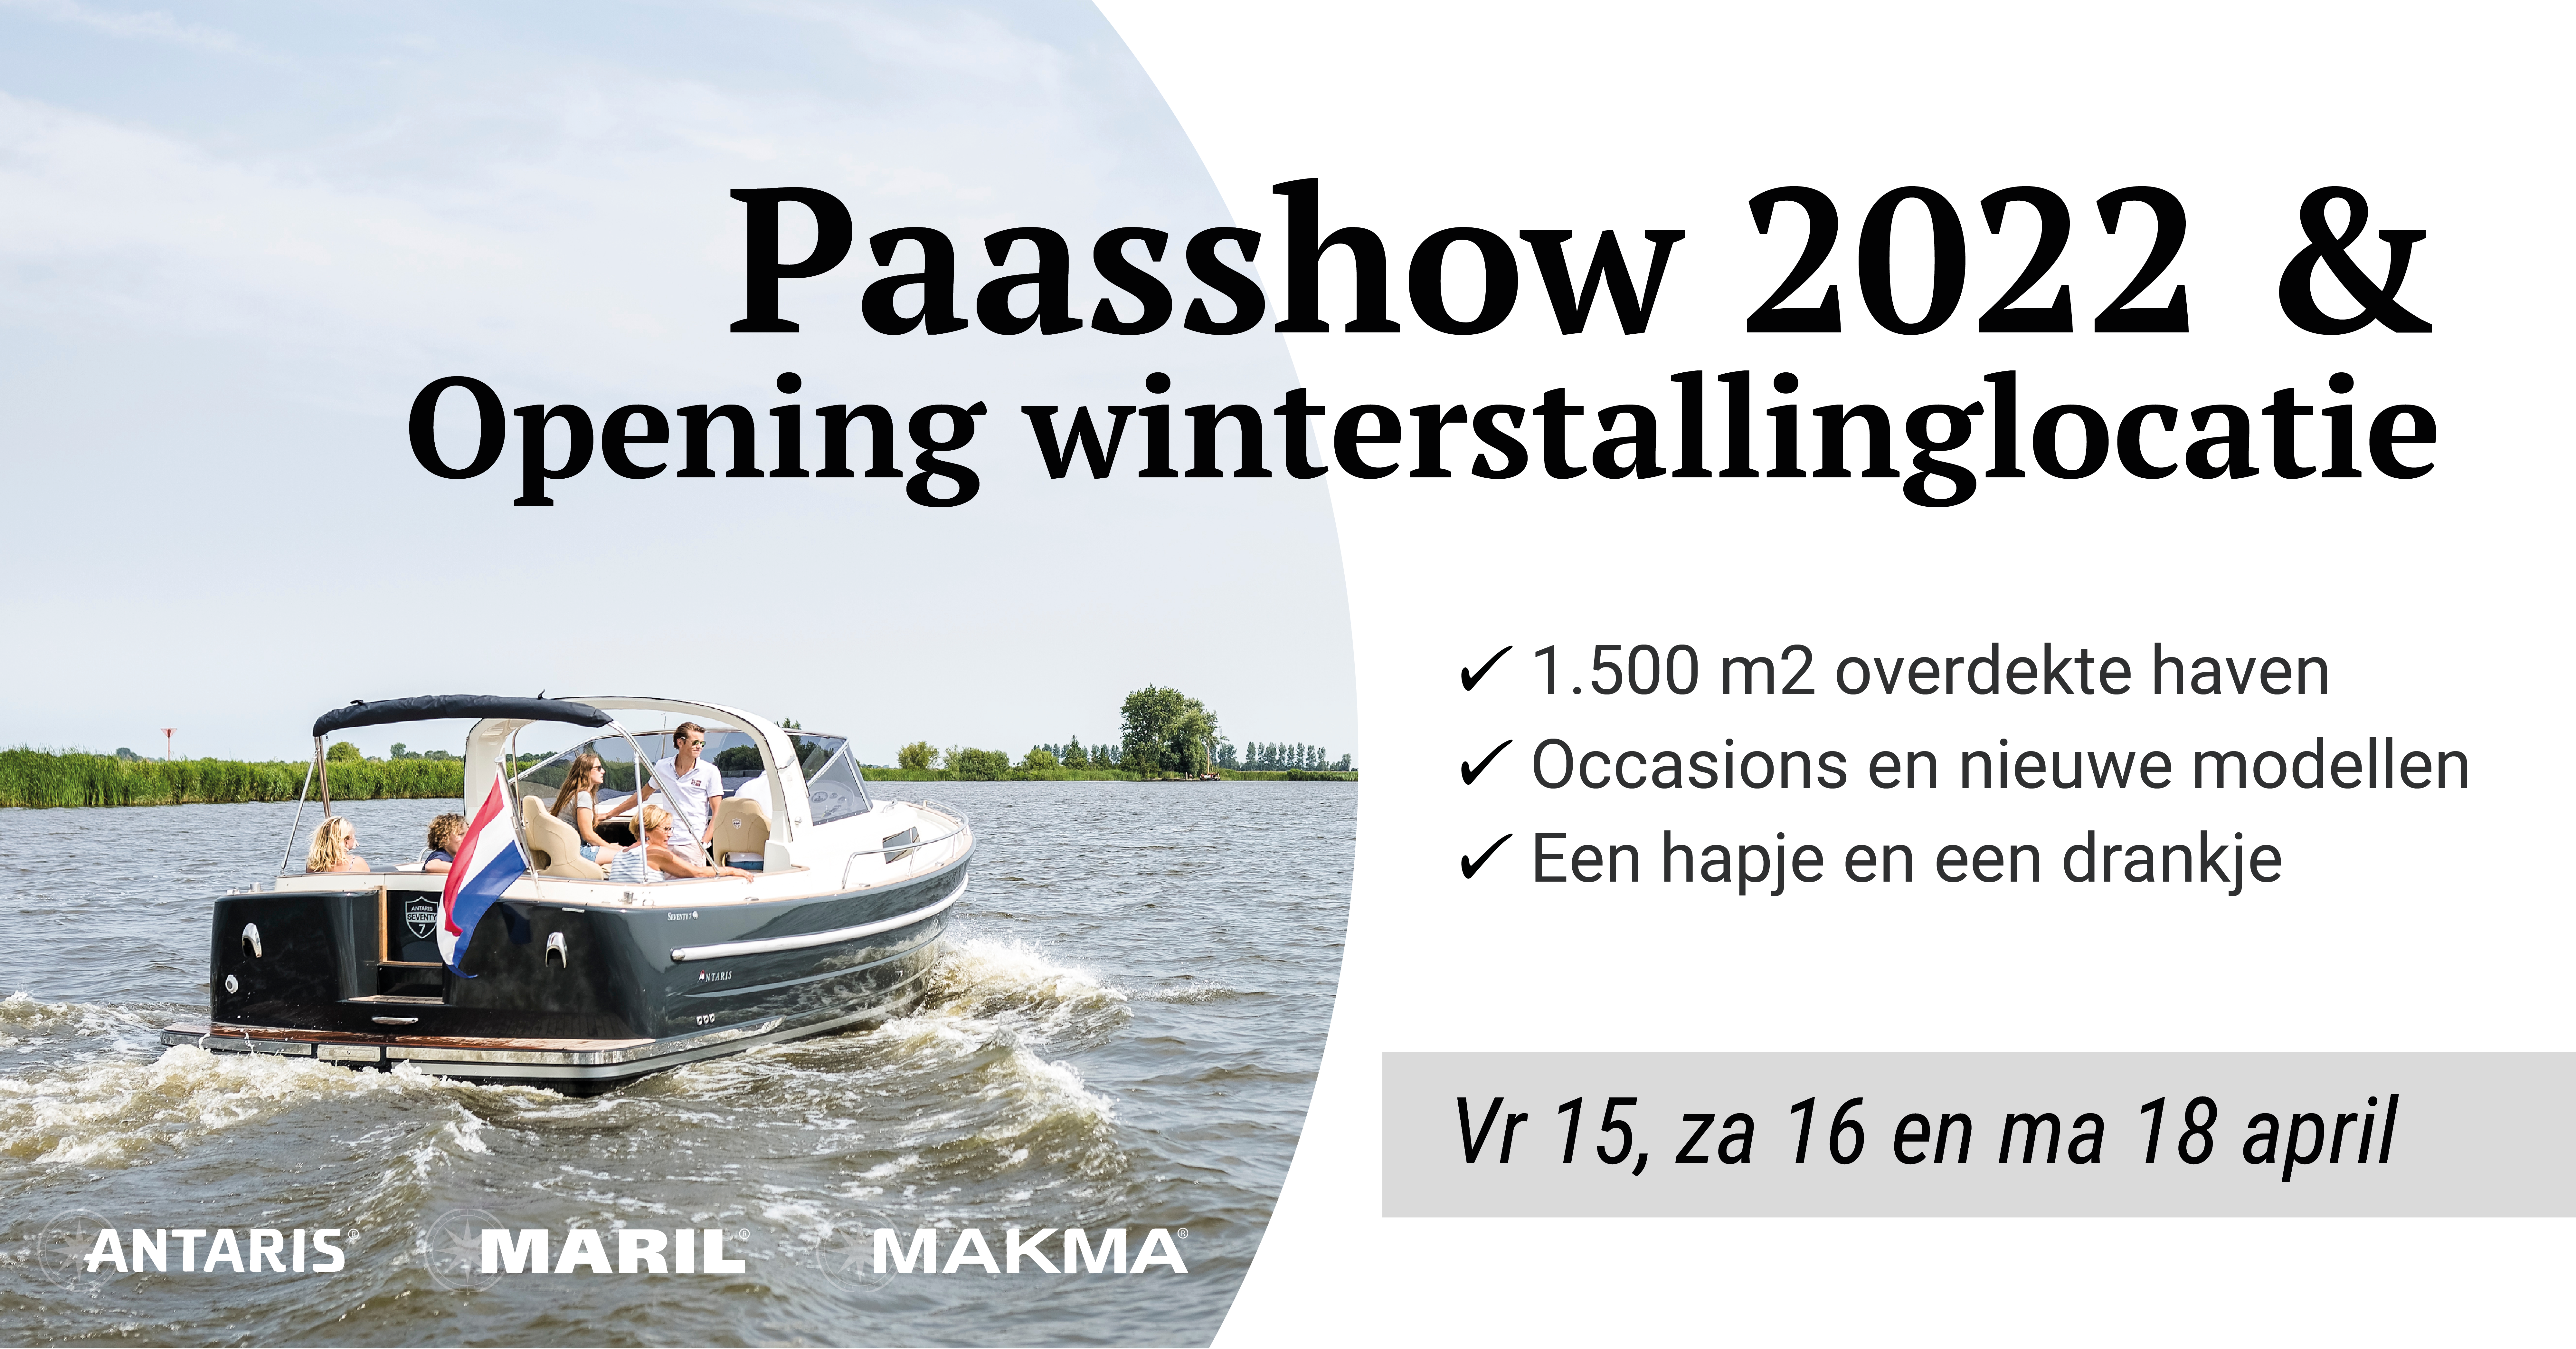 paasshow 2022 opening winterstallingloctatie